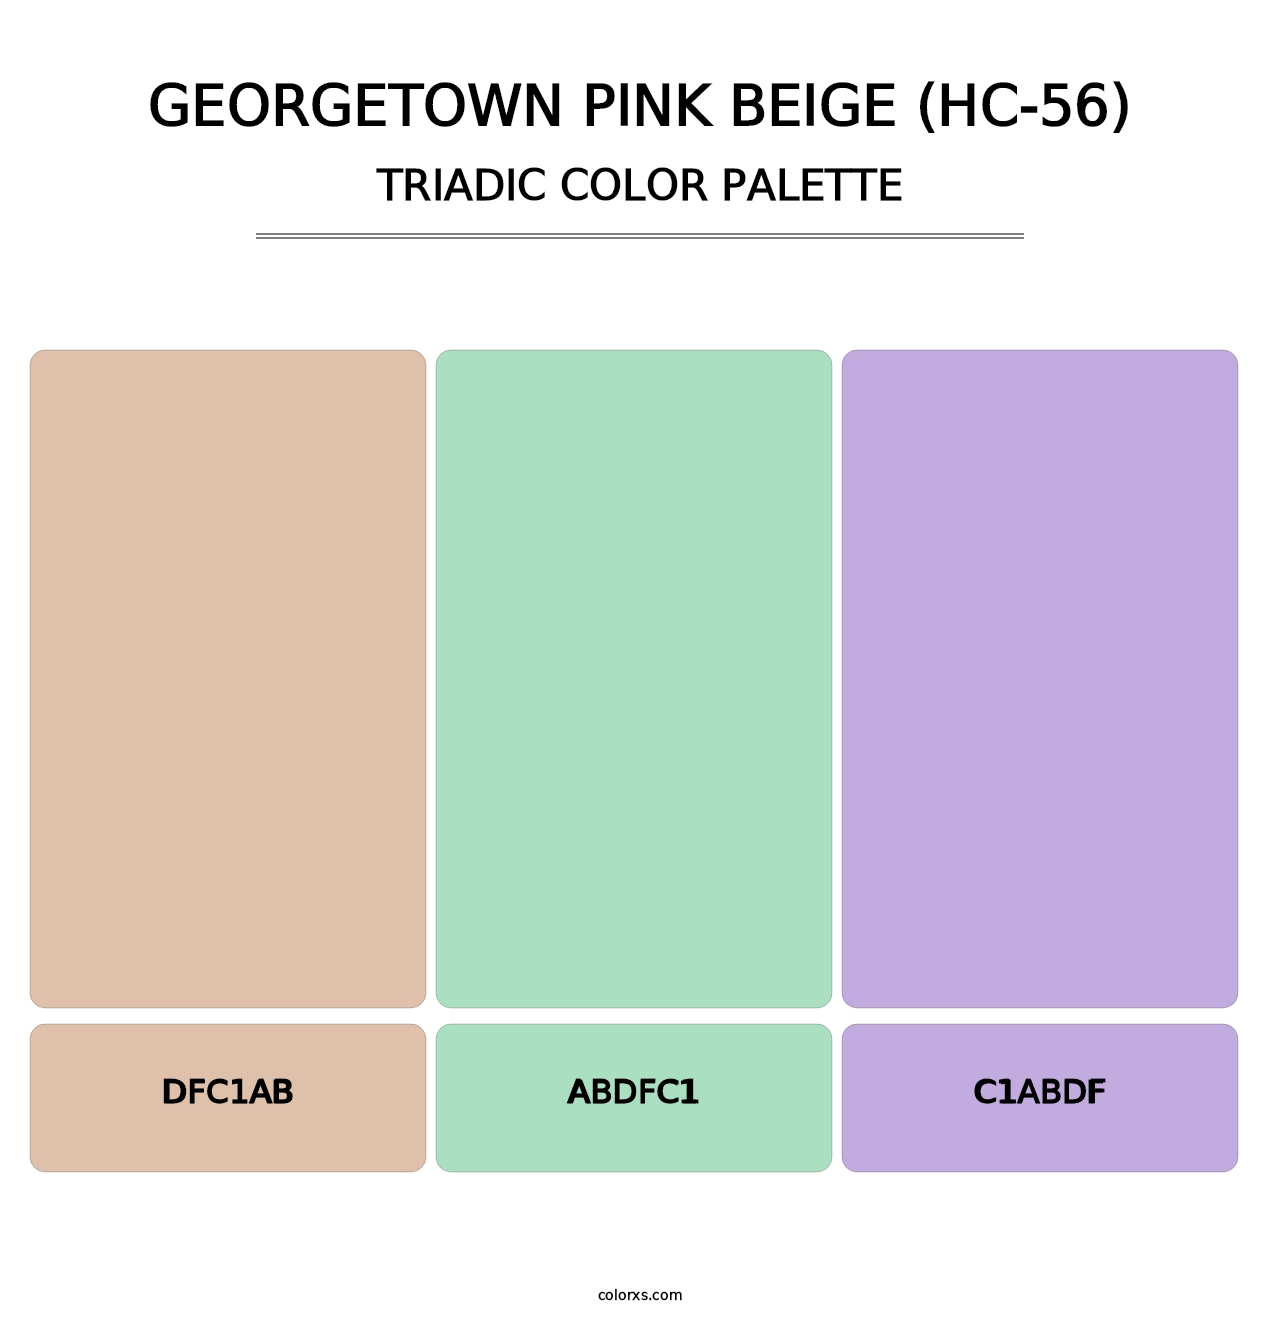 Georgetown Pink Beige (HC-56) - Triadic Color Palette